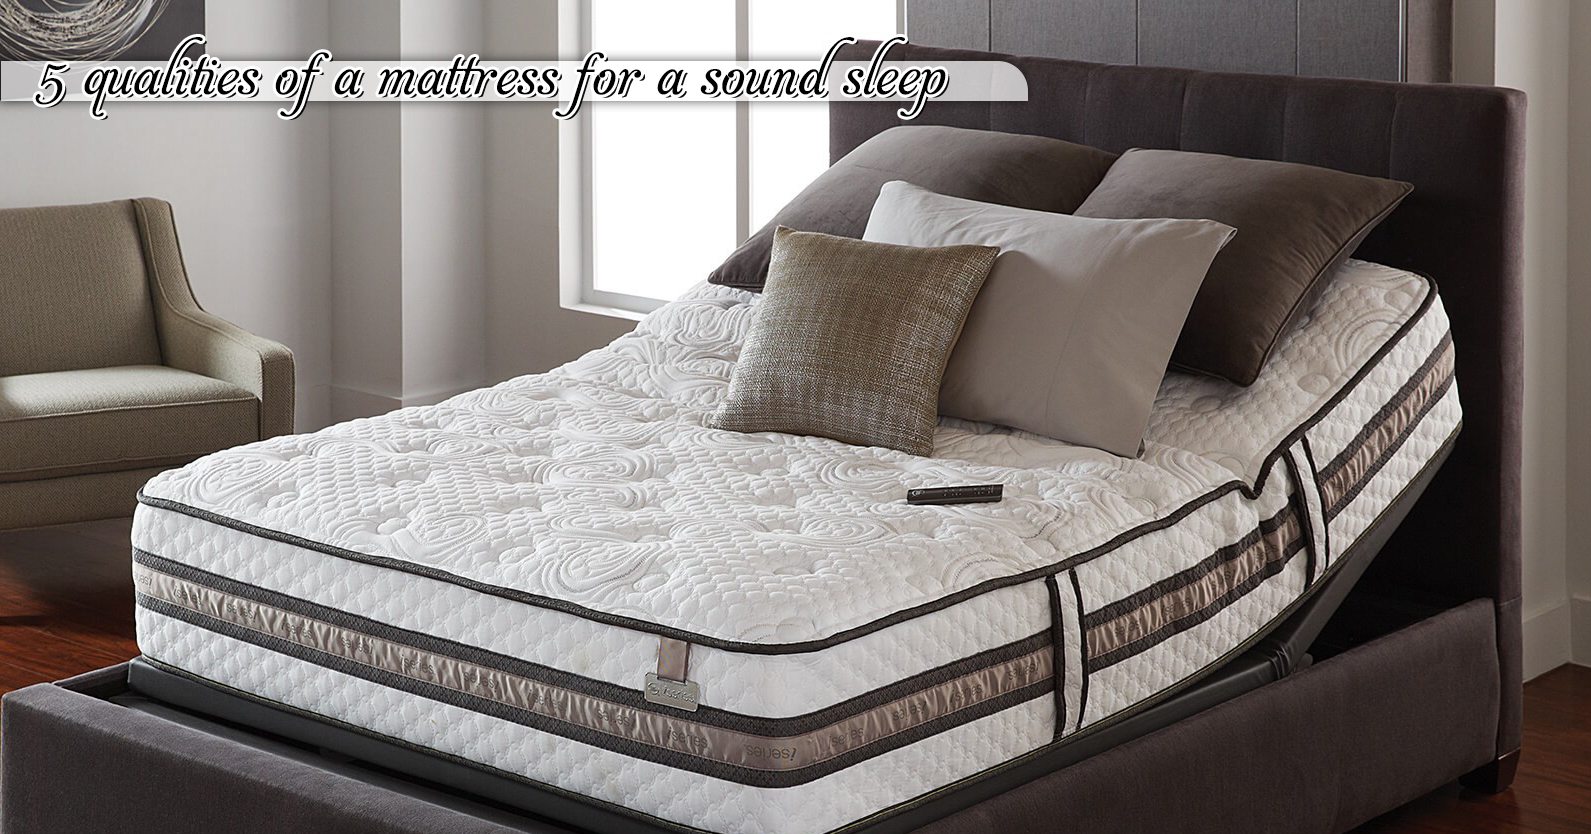 sound sleep mattress reviews